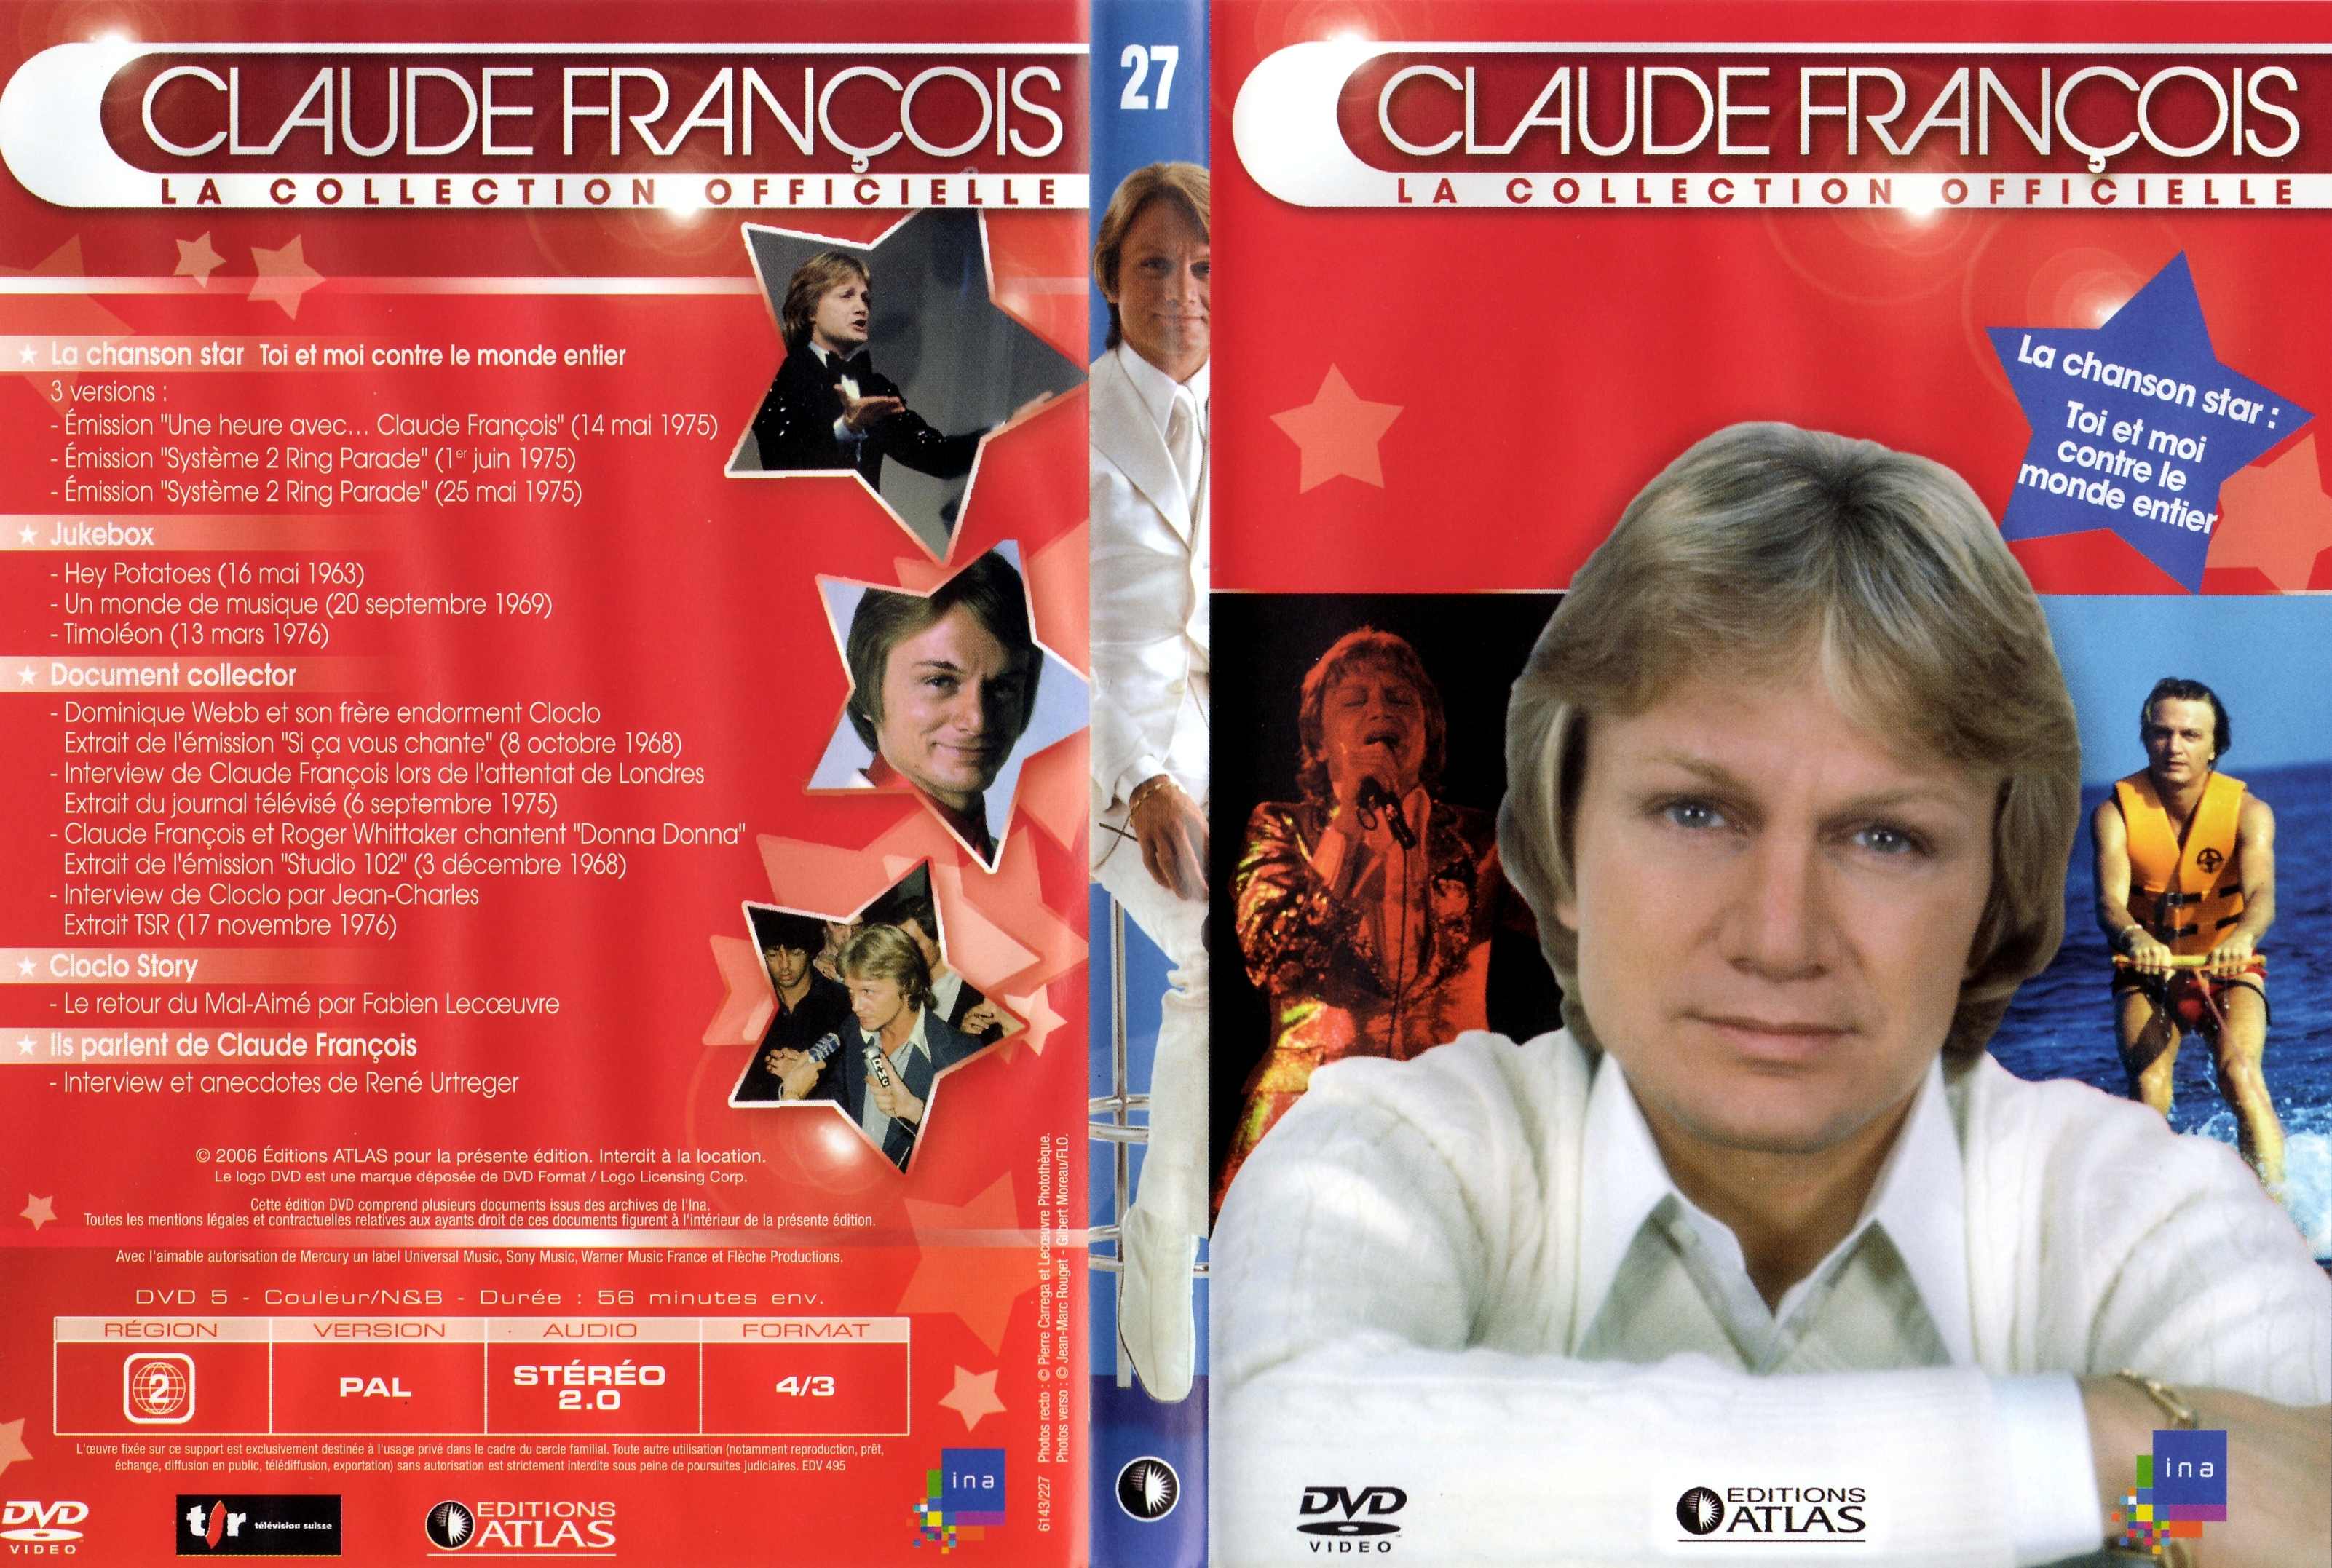 Jaquette DVD Claude Francois la collection officielle vol 27